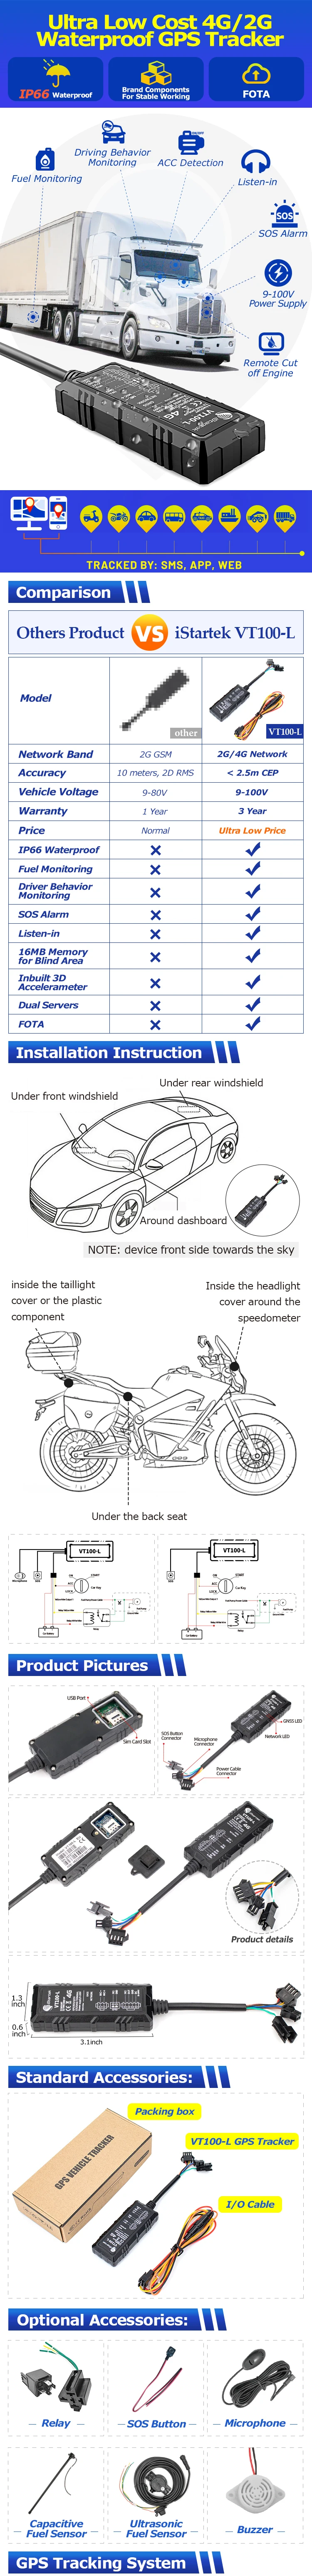 GPS Rastreador VT100 GPS Moto, Automóvil, Camioneta o Maquinaria.  Impermeable IP66, Múltiples I/O (Entradas y